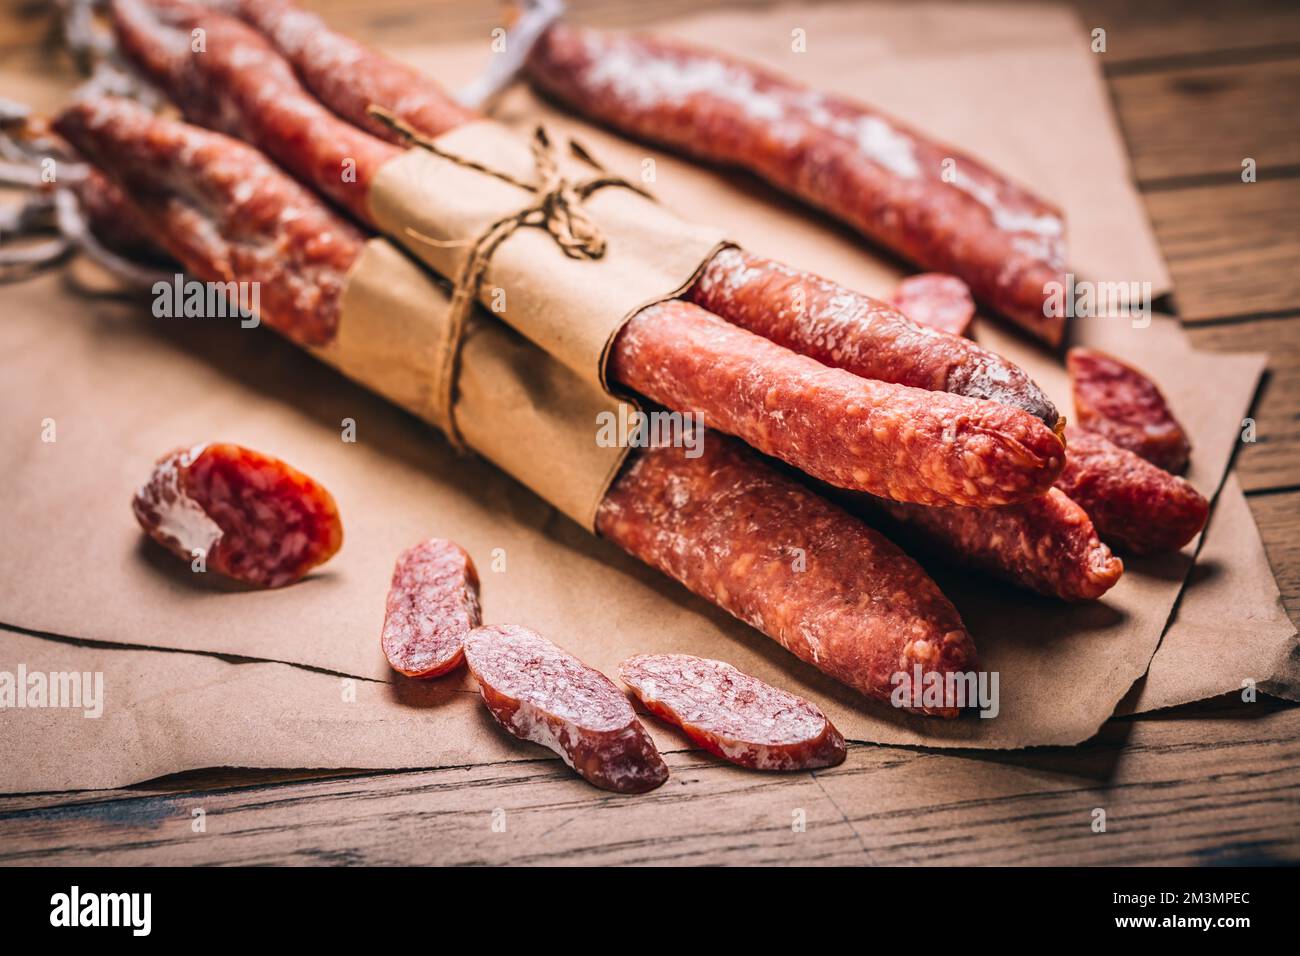 Fuet de salami espagnol - saucisses fermentées naturelles et séchées Banque D'Images